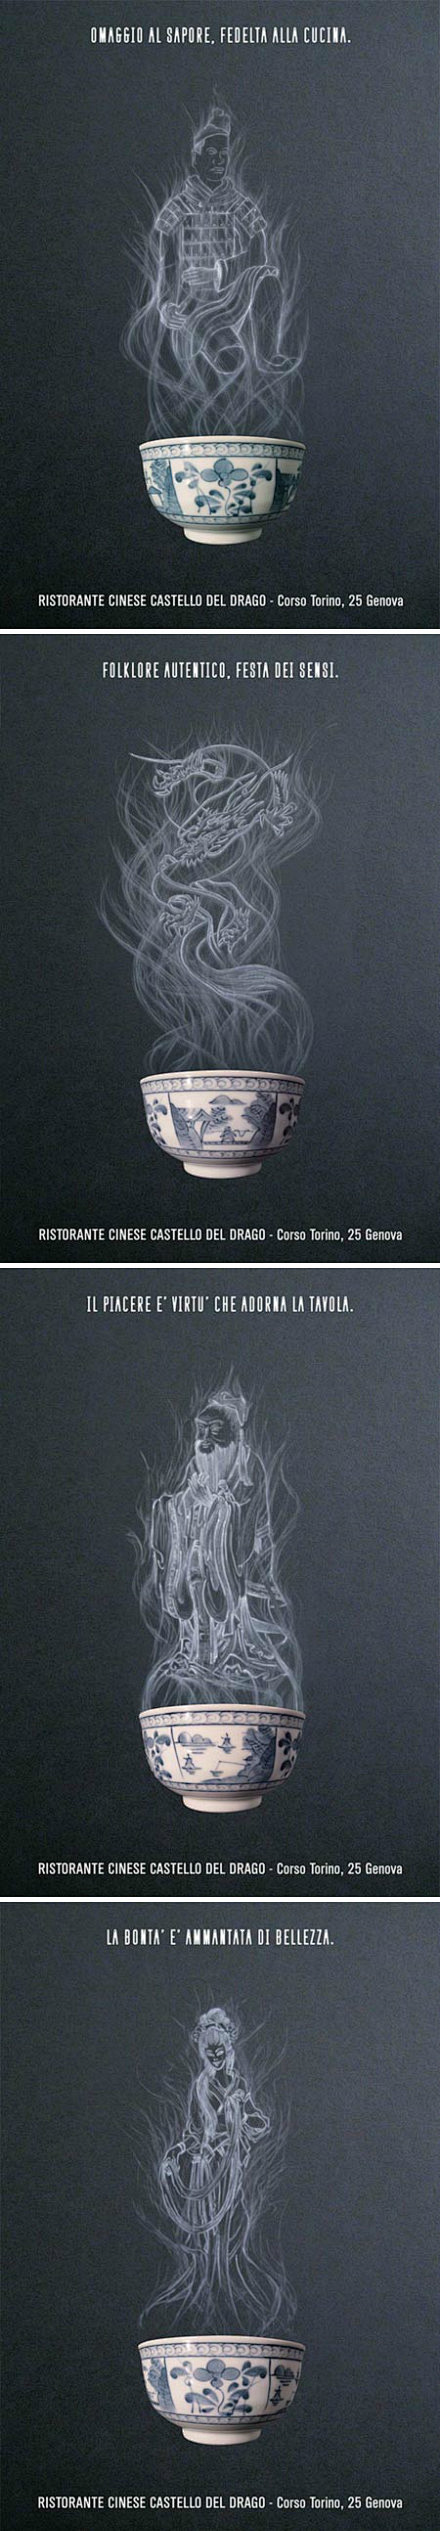 意大利德尔富盈城堡中餐厅平面海报设计